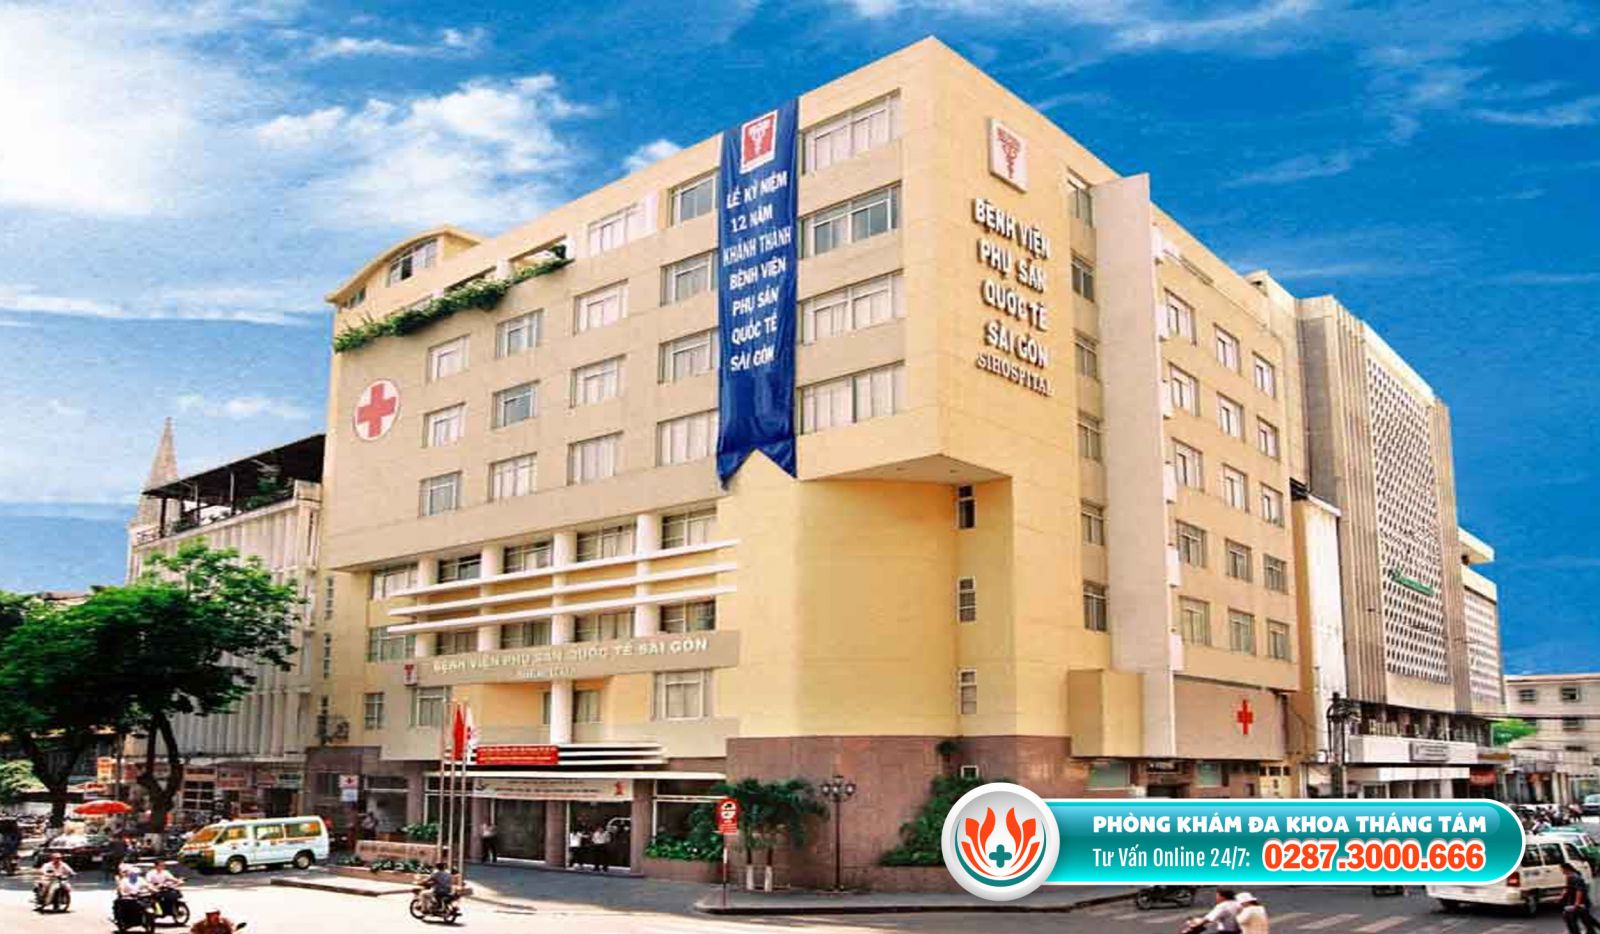 Bệnh viện Phụ sản Quốc tế Sài Gòn là cơ sở y tế đình chỉ thai chất lượng